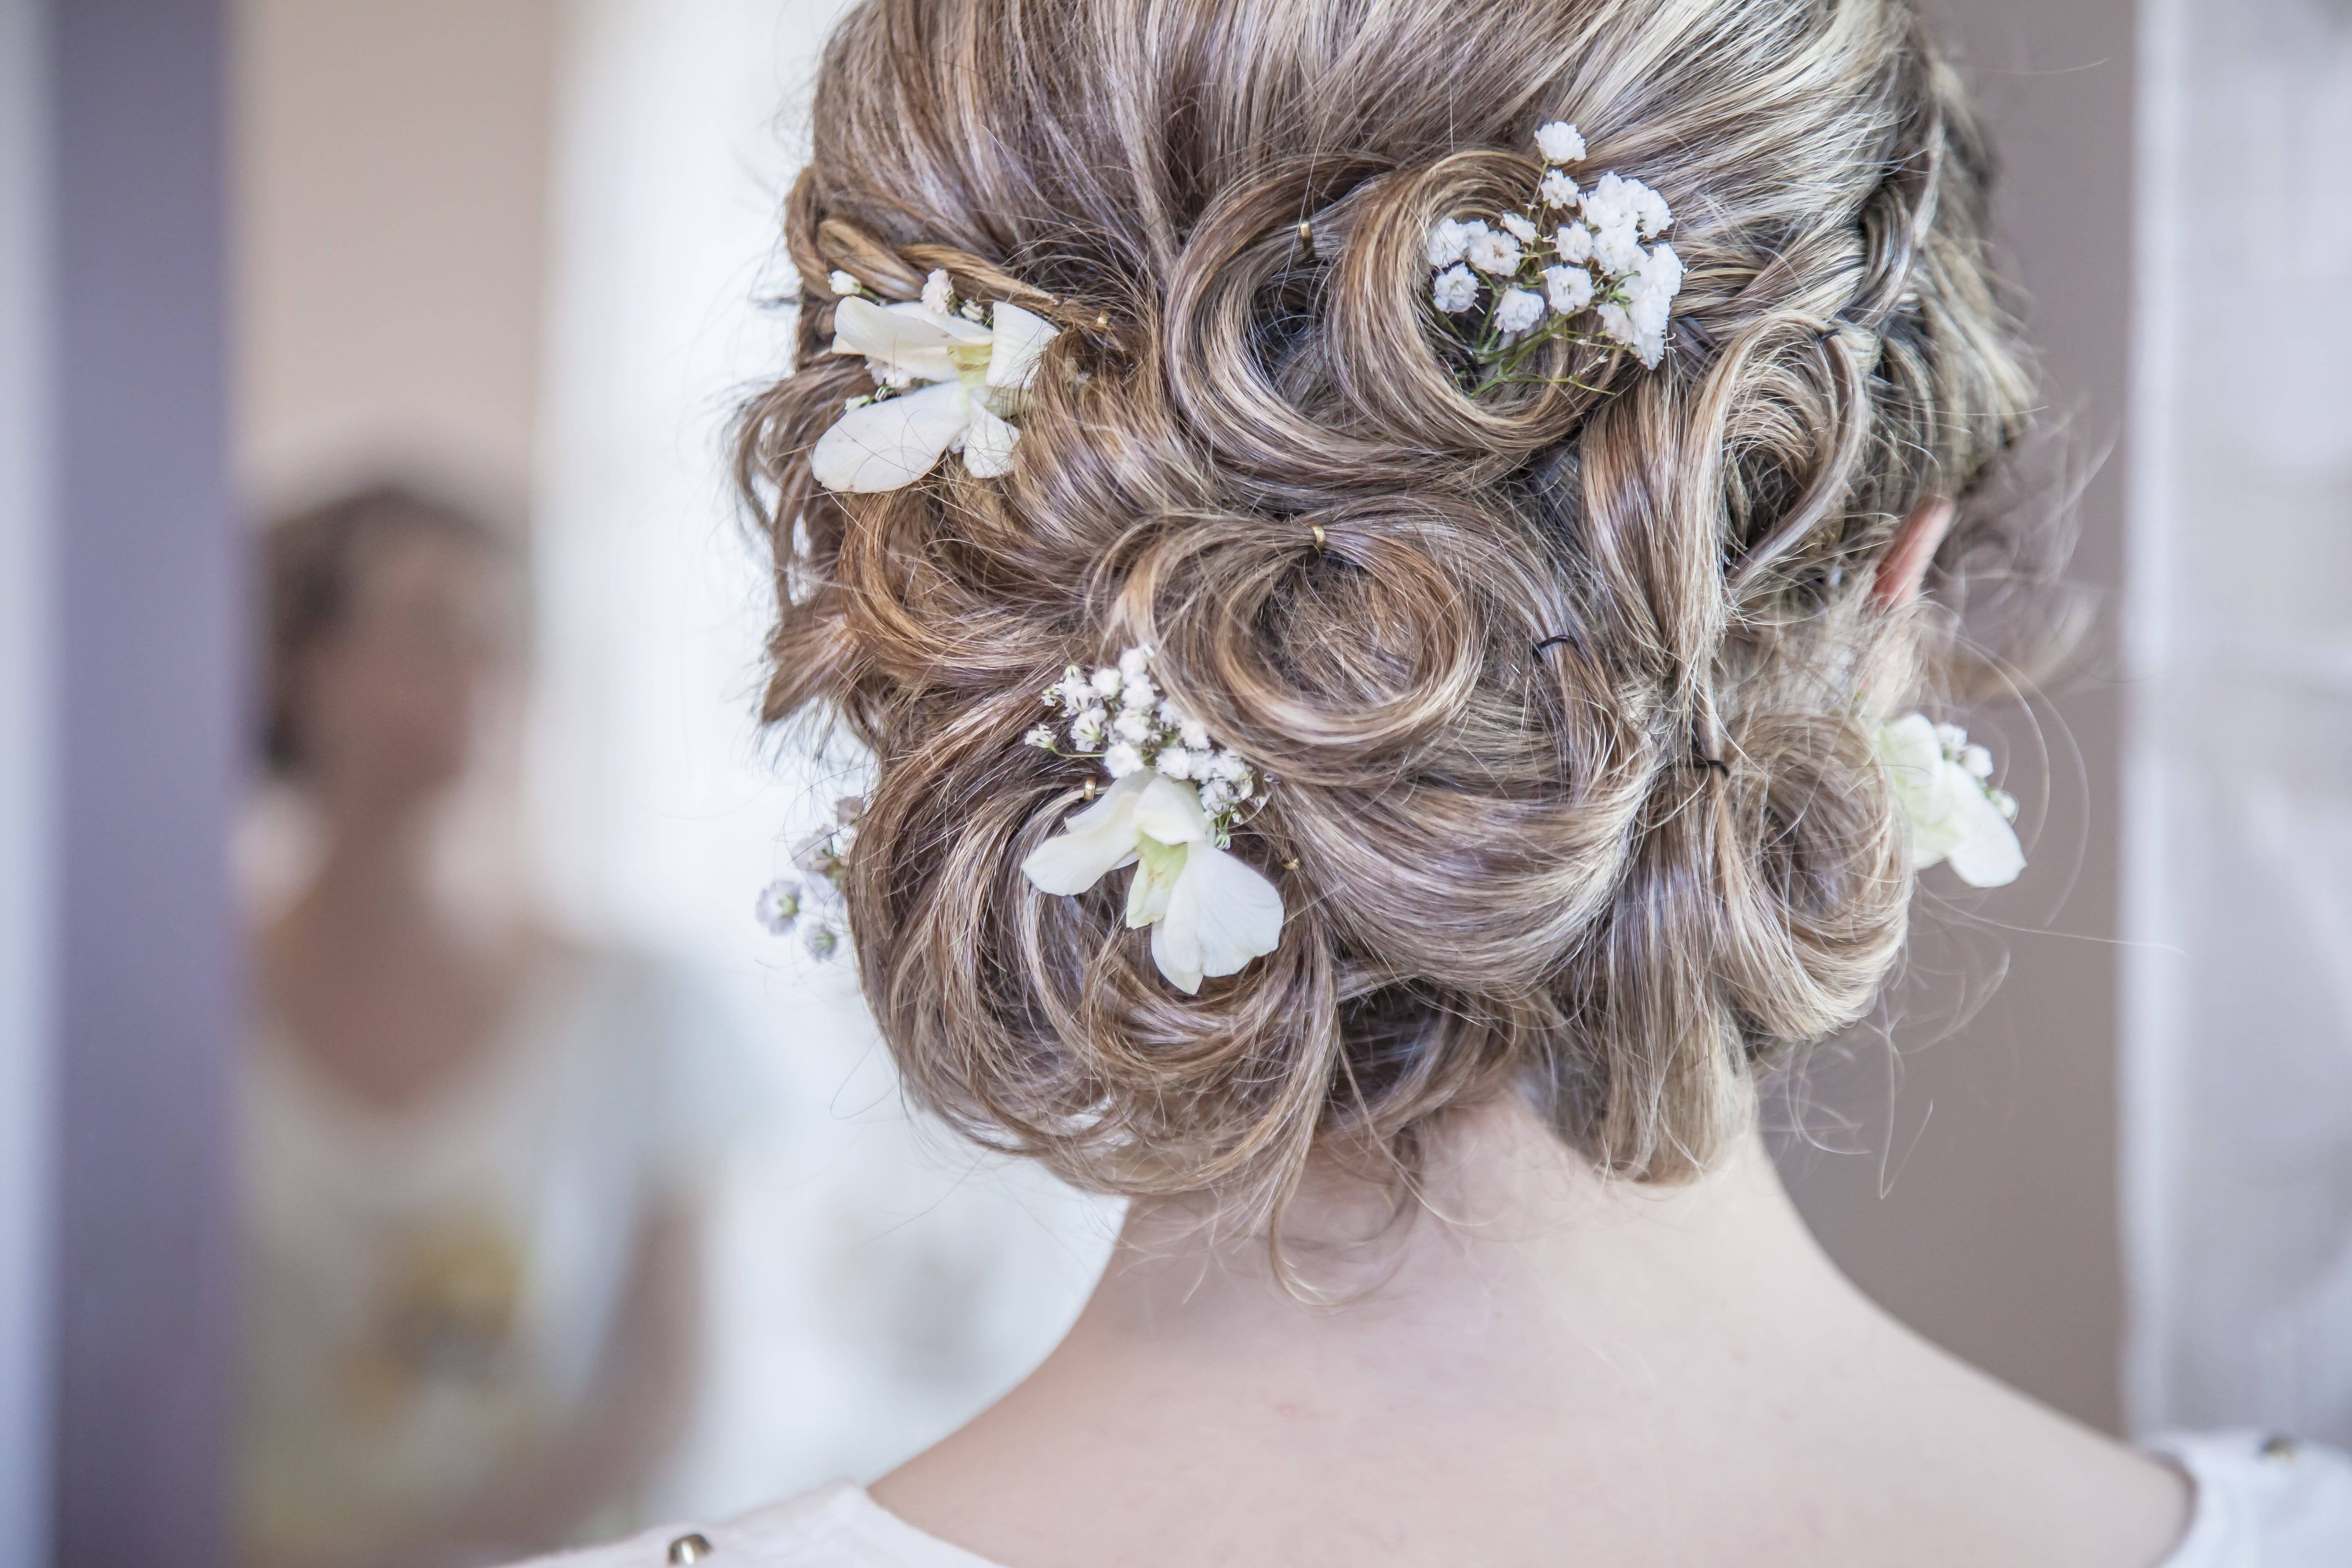 Красивая прическа на свадьбу. Свадебные прически. Прическа невесты. Свадебная прическа с цветами в волосах. Красивые причёски на свадьбу невесте.